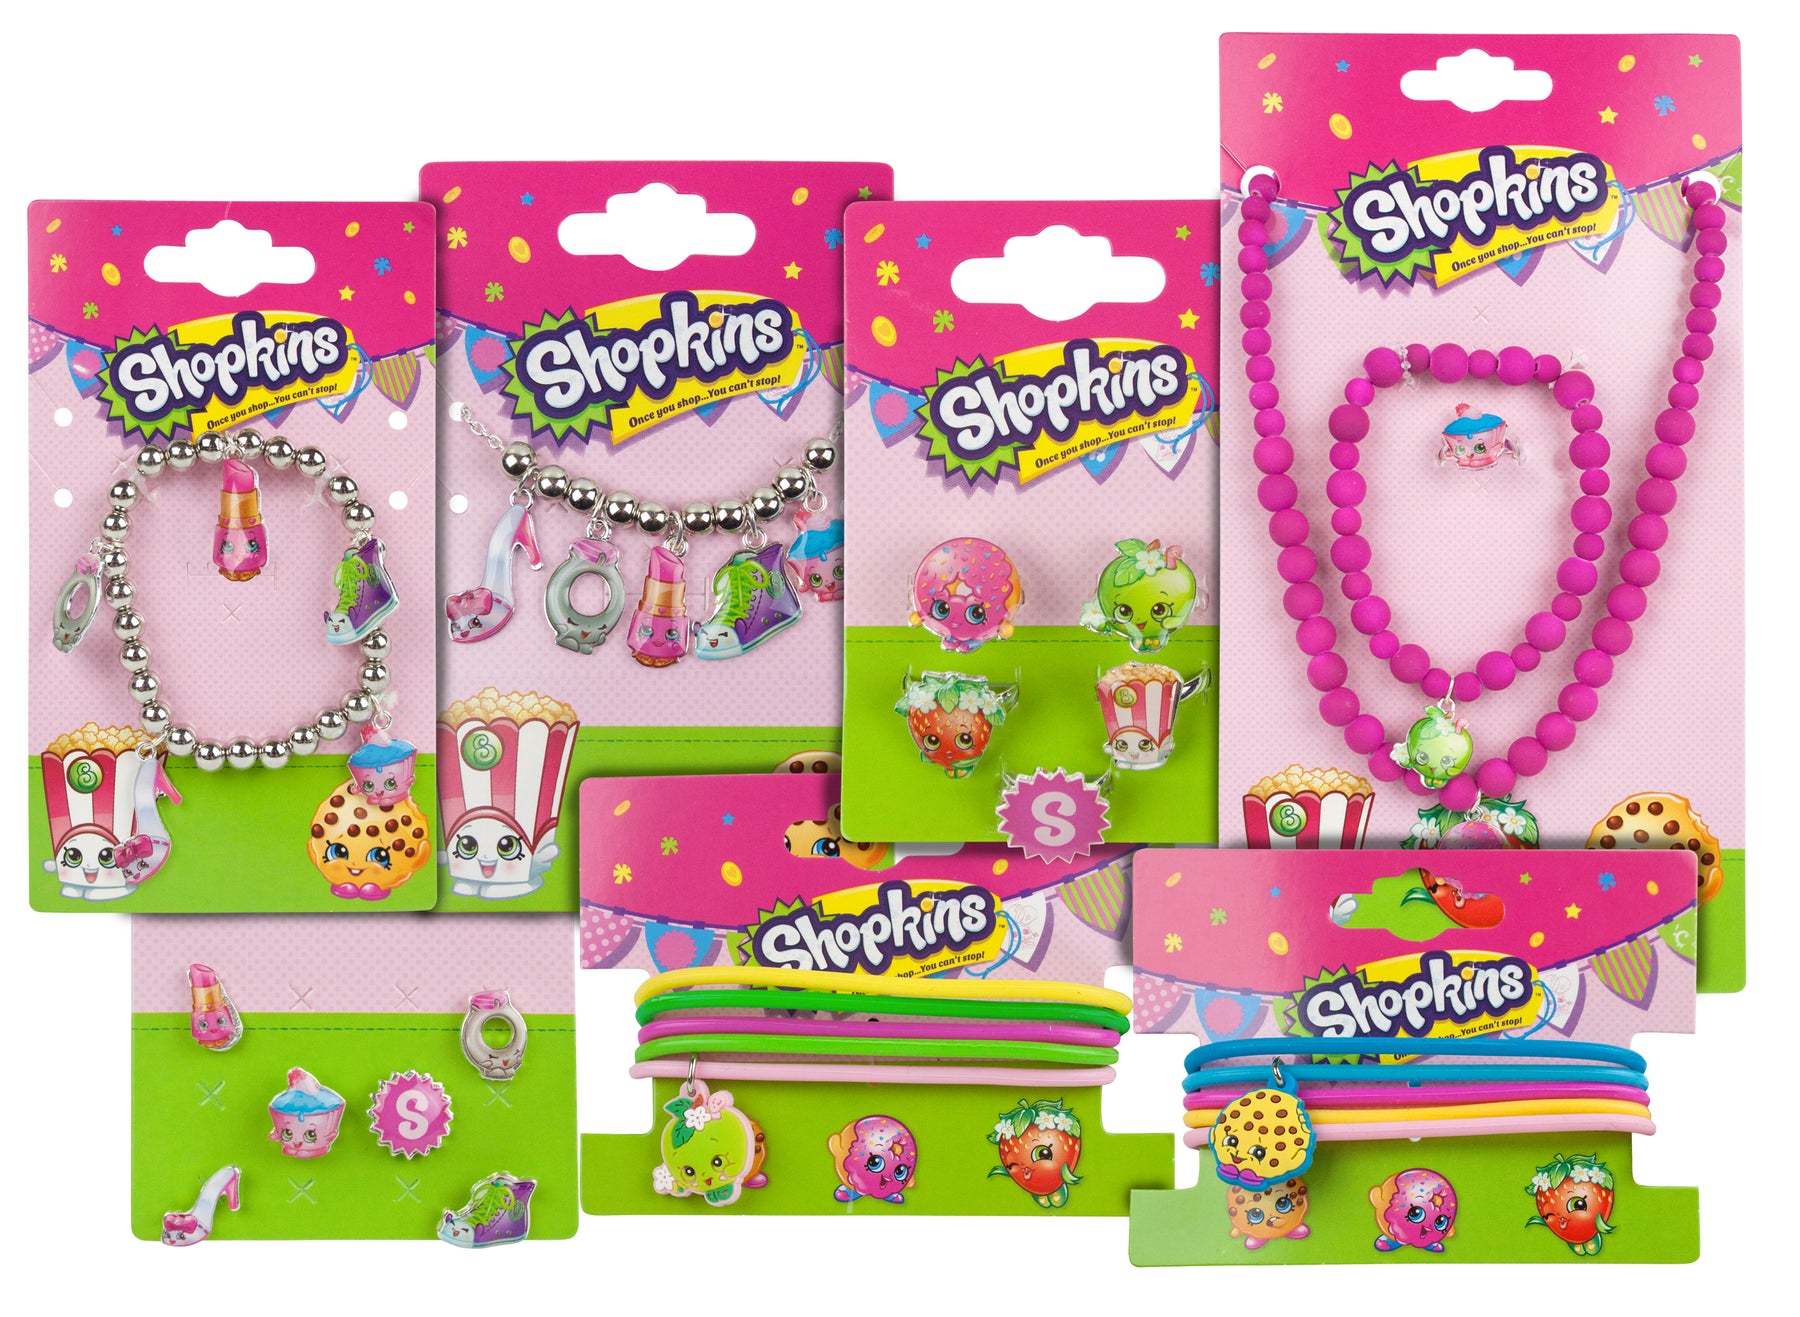 Shopkins Girls Accessories Variety Gift Set Bundle